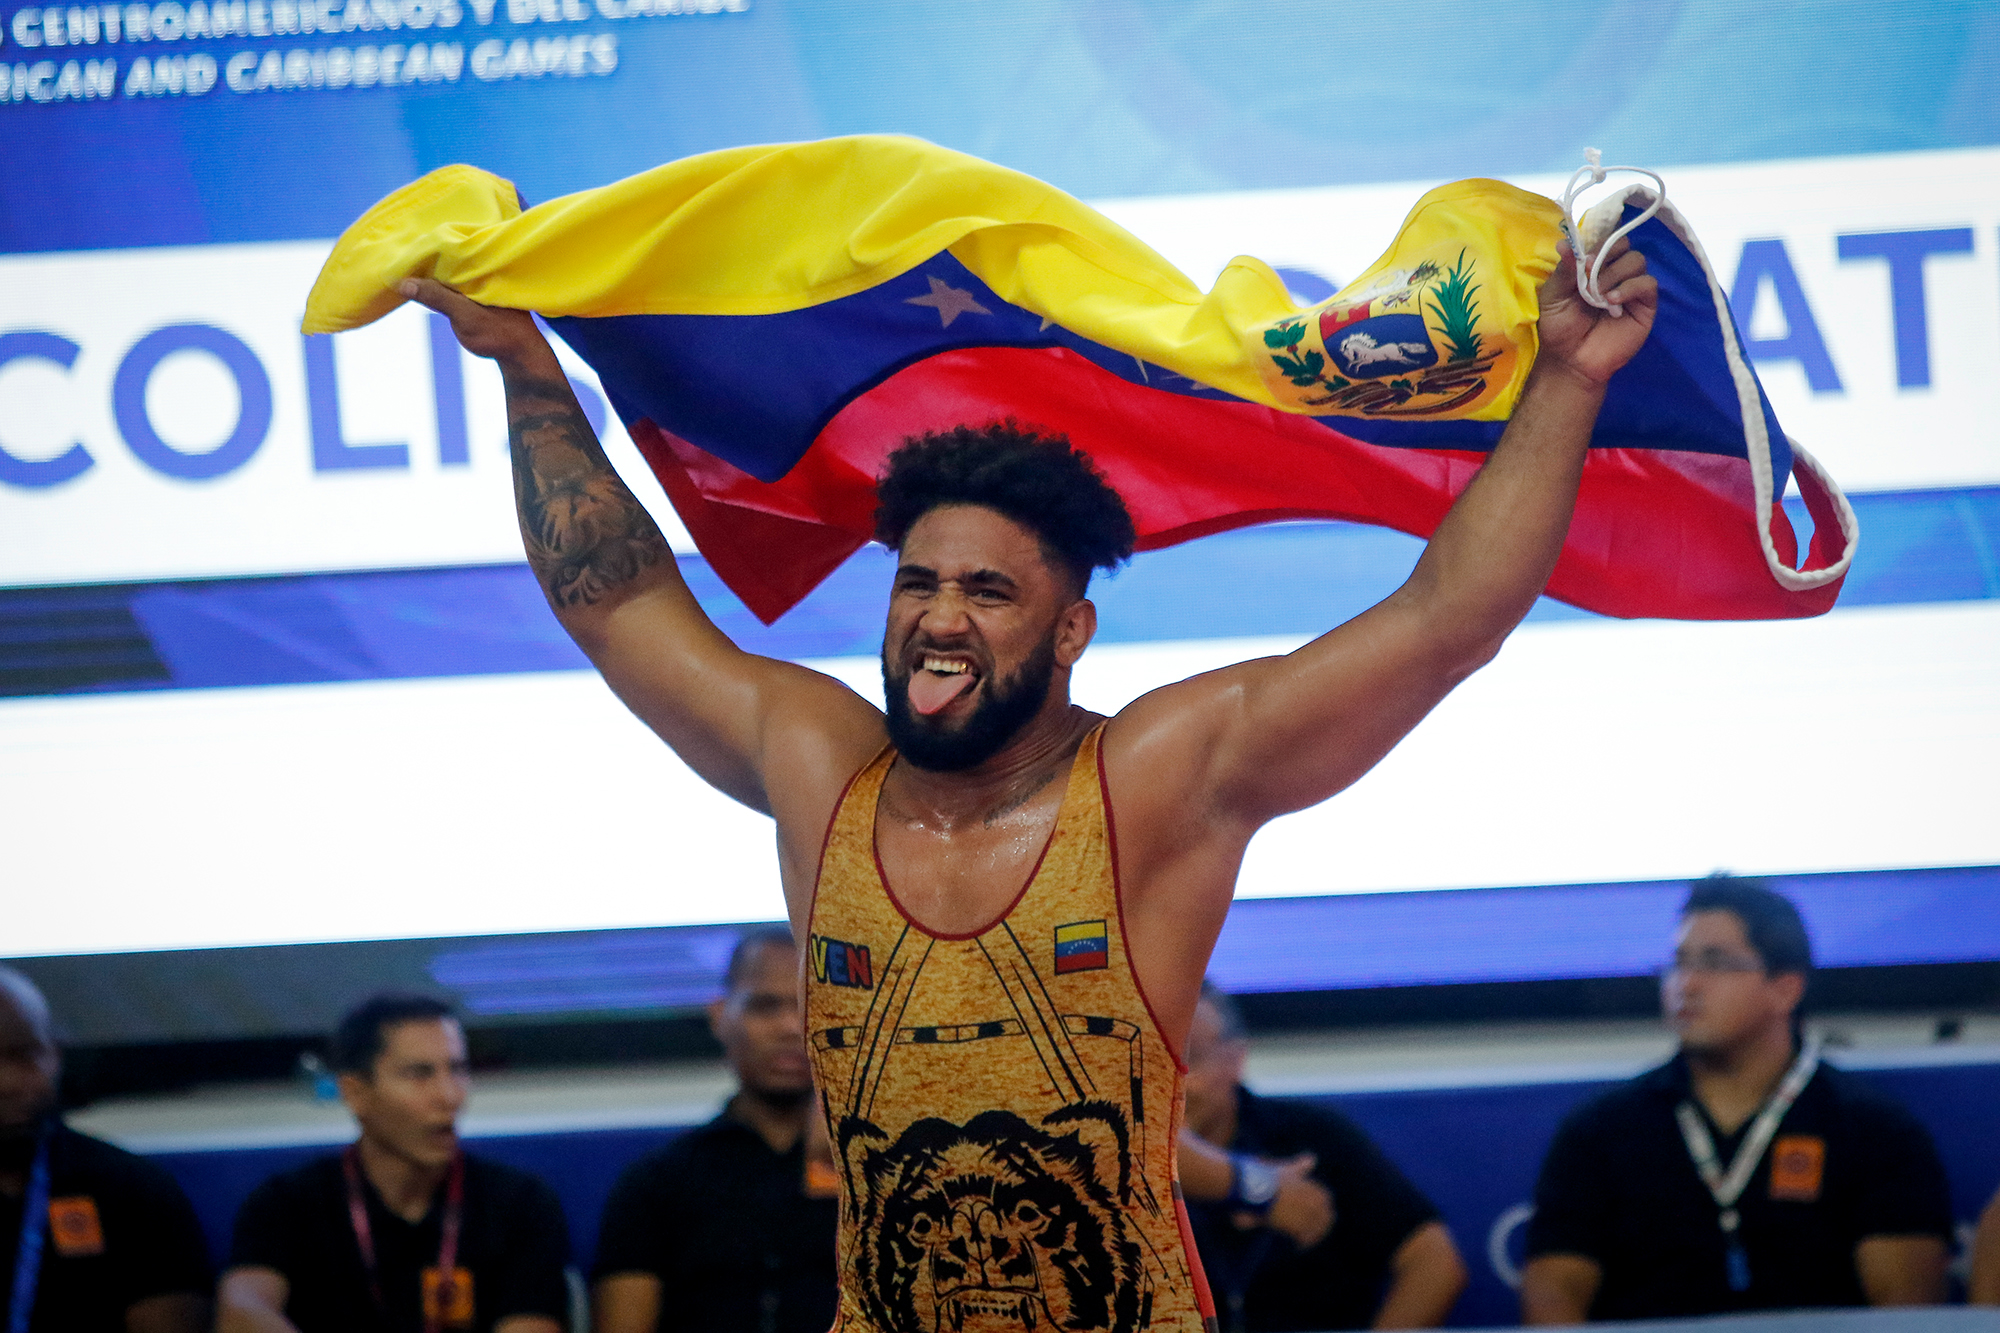 Venezuela es cuartos en los XXIII Juegos CAC Barranquilla 2018